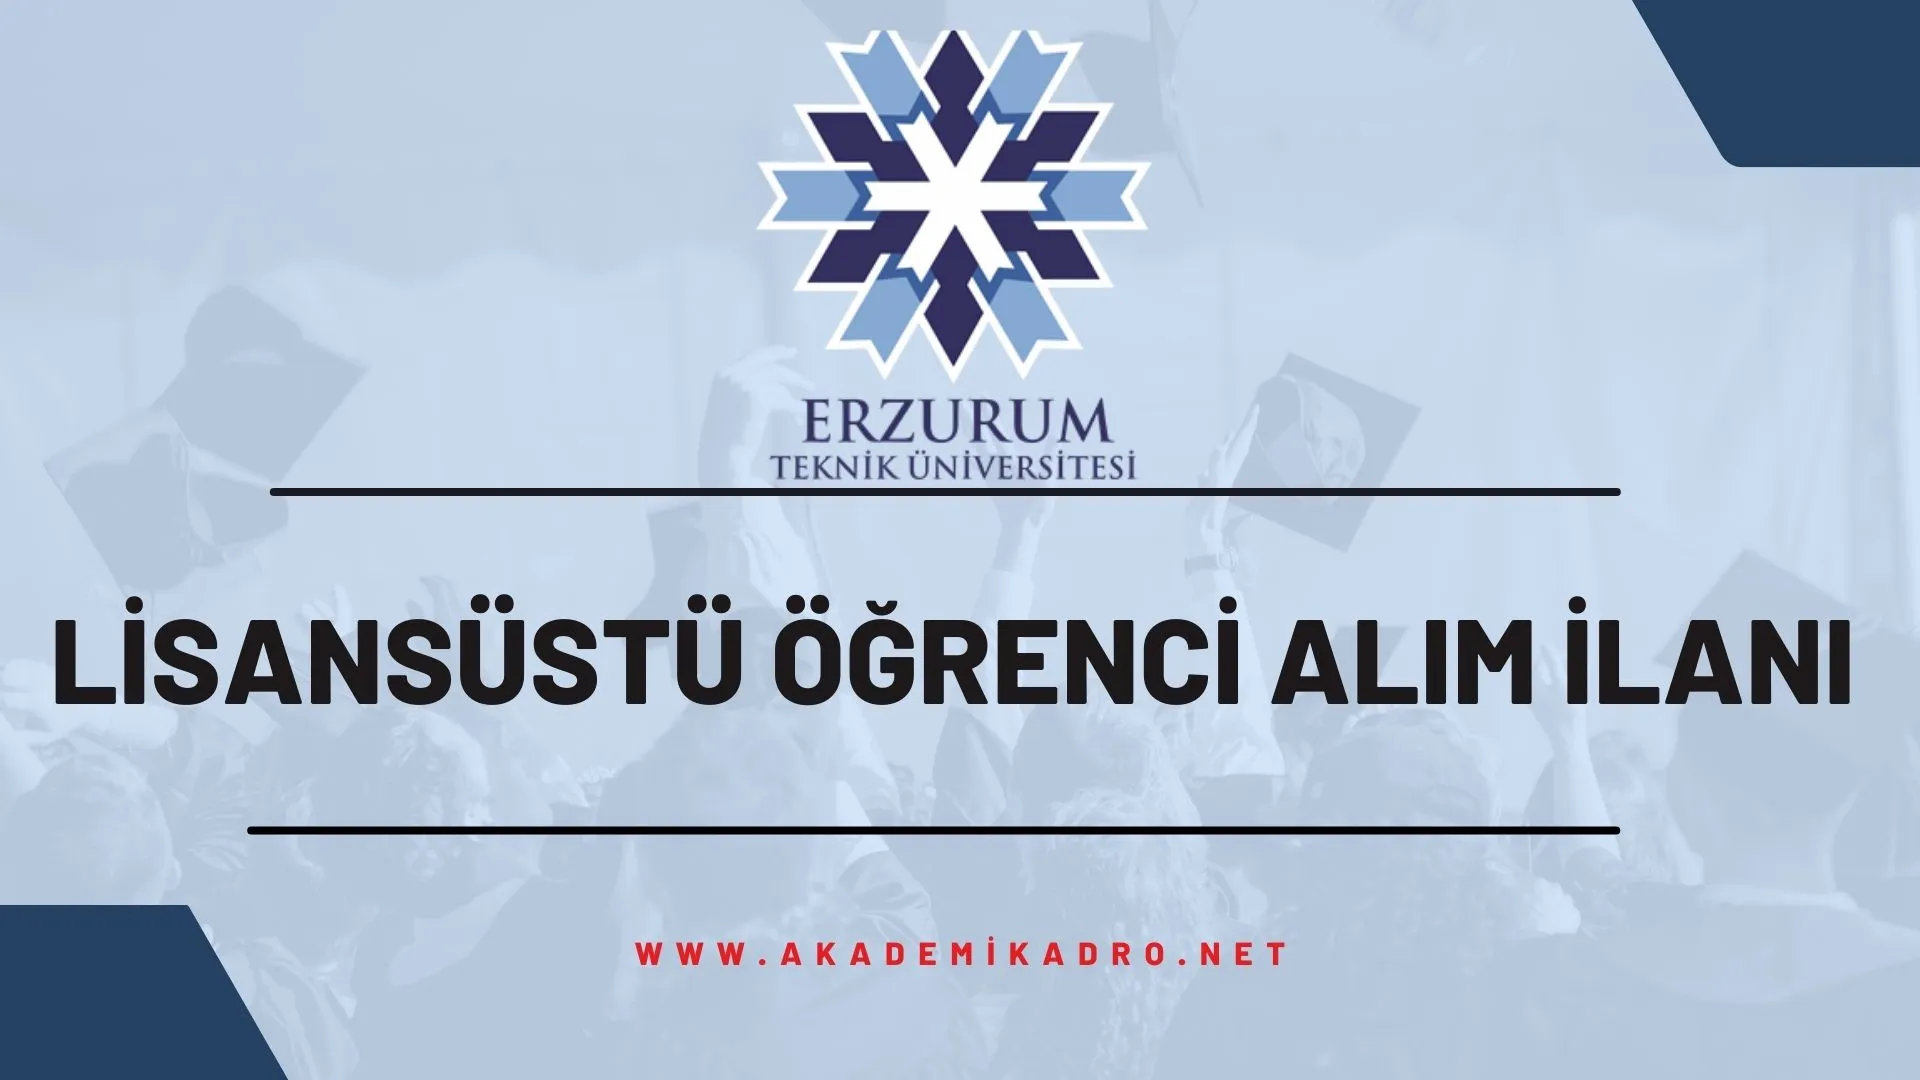 Erzurum Teknik Üniversitesi 2022-2023 bahar döneminde lisansüstü programlara öğrenci alacaktır.